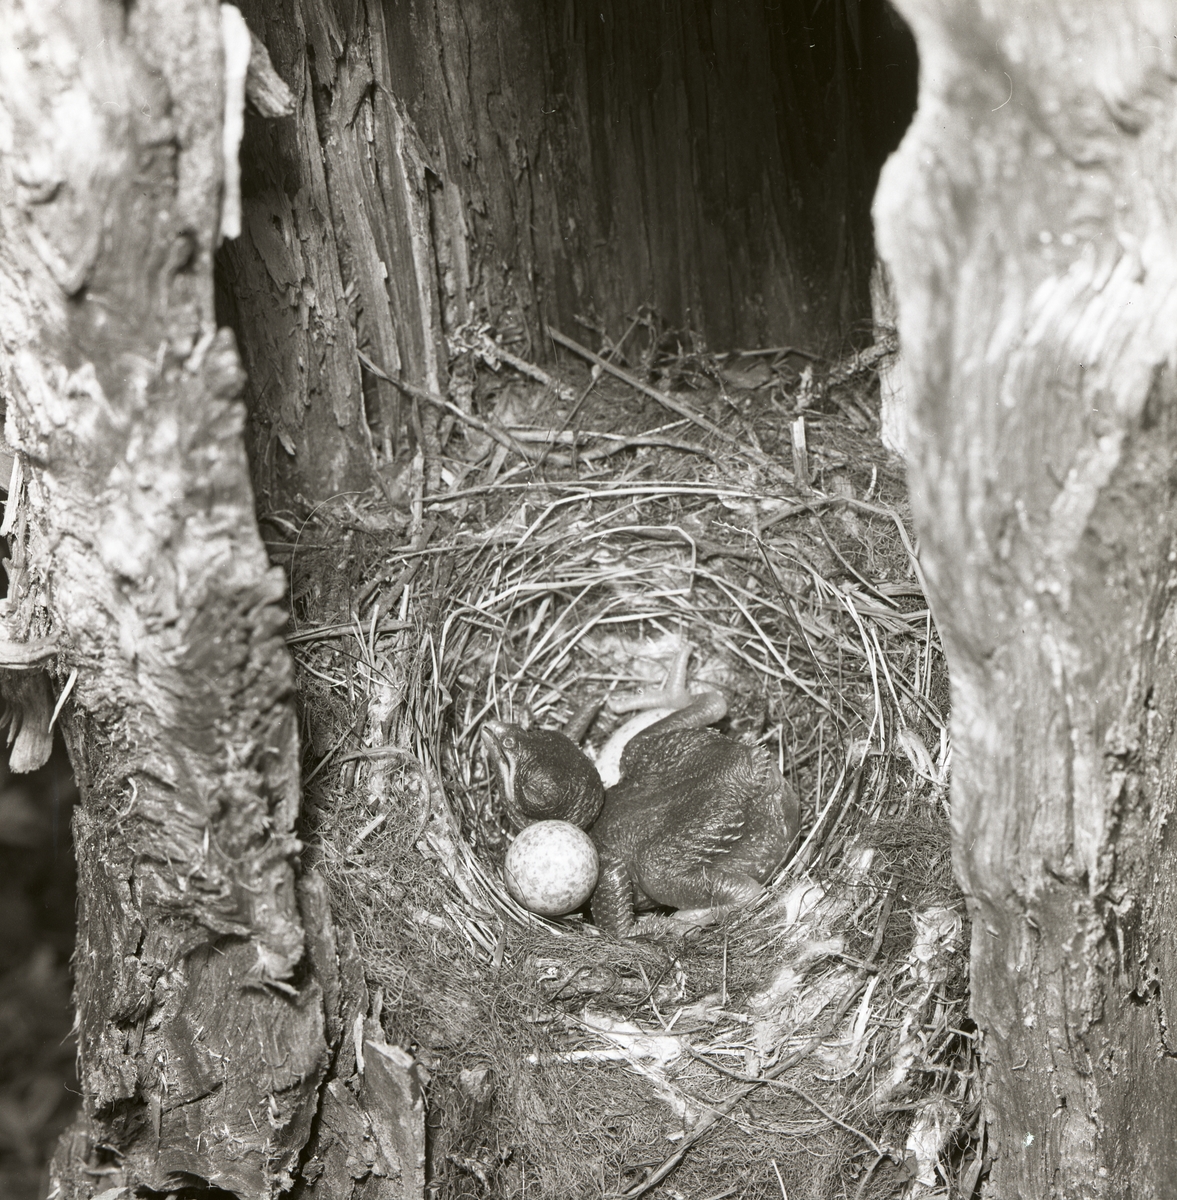 En gökunge ligger i ett fågelbo och försöker putta ut de andra fågeläggen från boet.